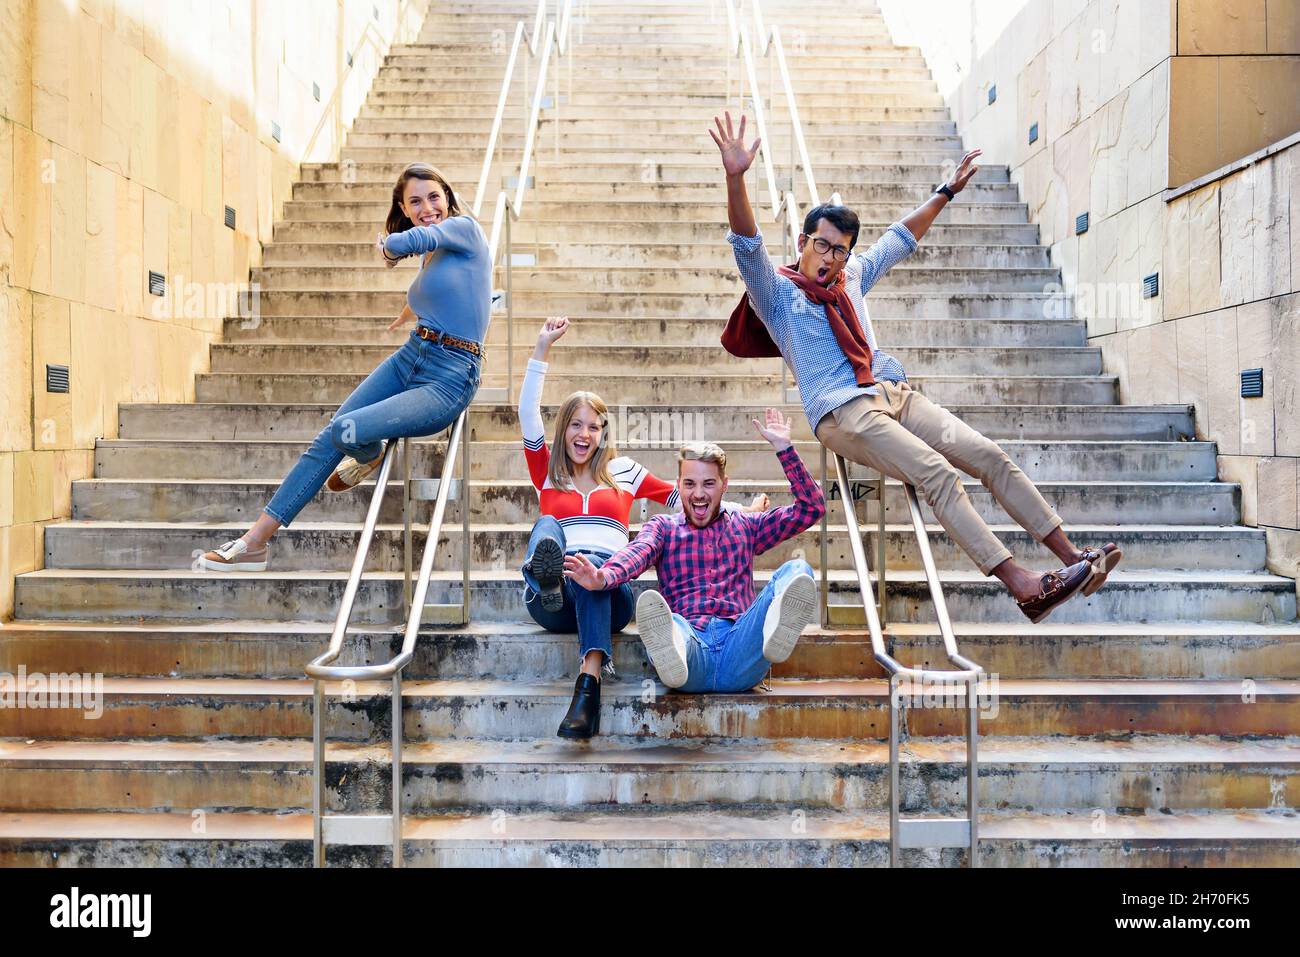 Un gruppo multiculturale di amici felici ed eccitati che si acclamano e ridono mentre scivolano sulle rotaie di una rampa di scale esterne in una città in libertà Foto Stock